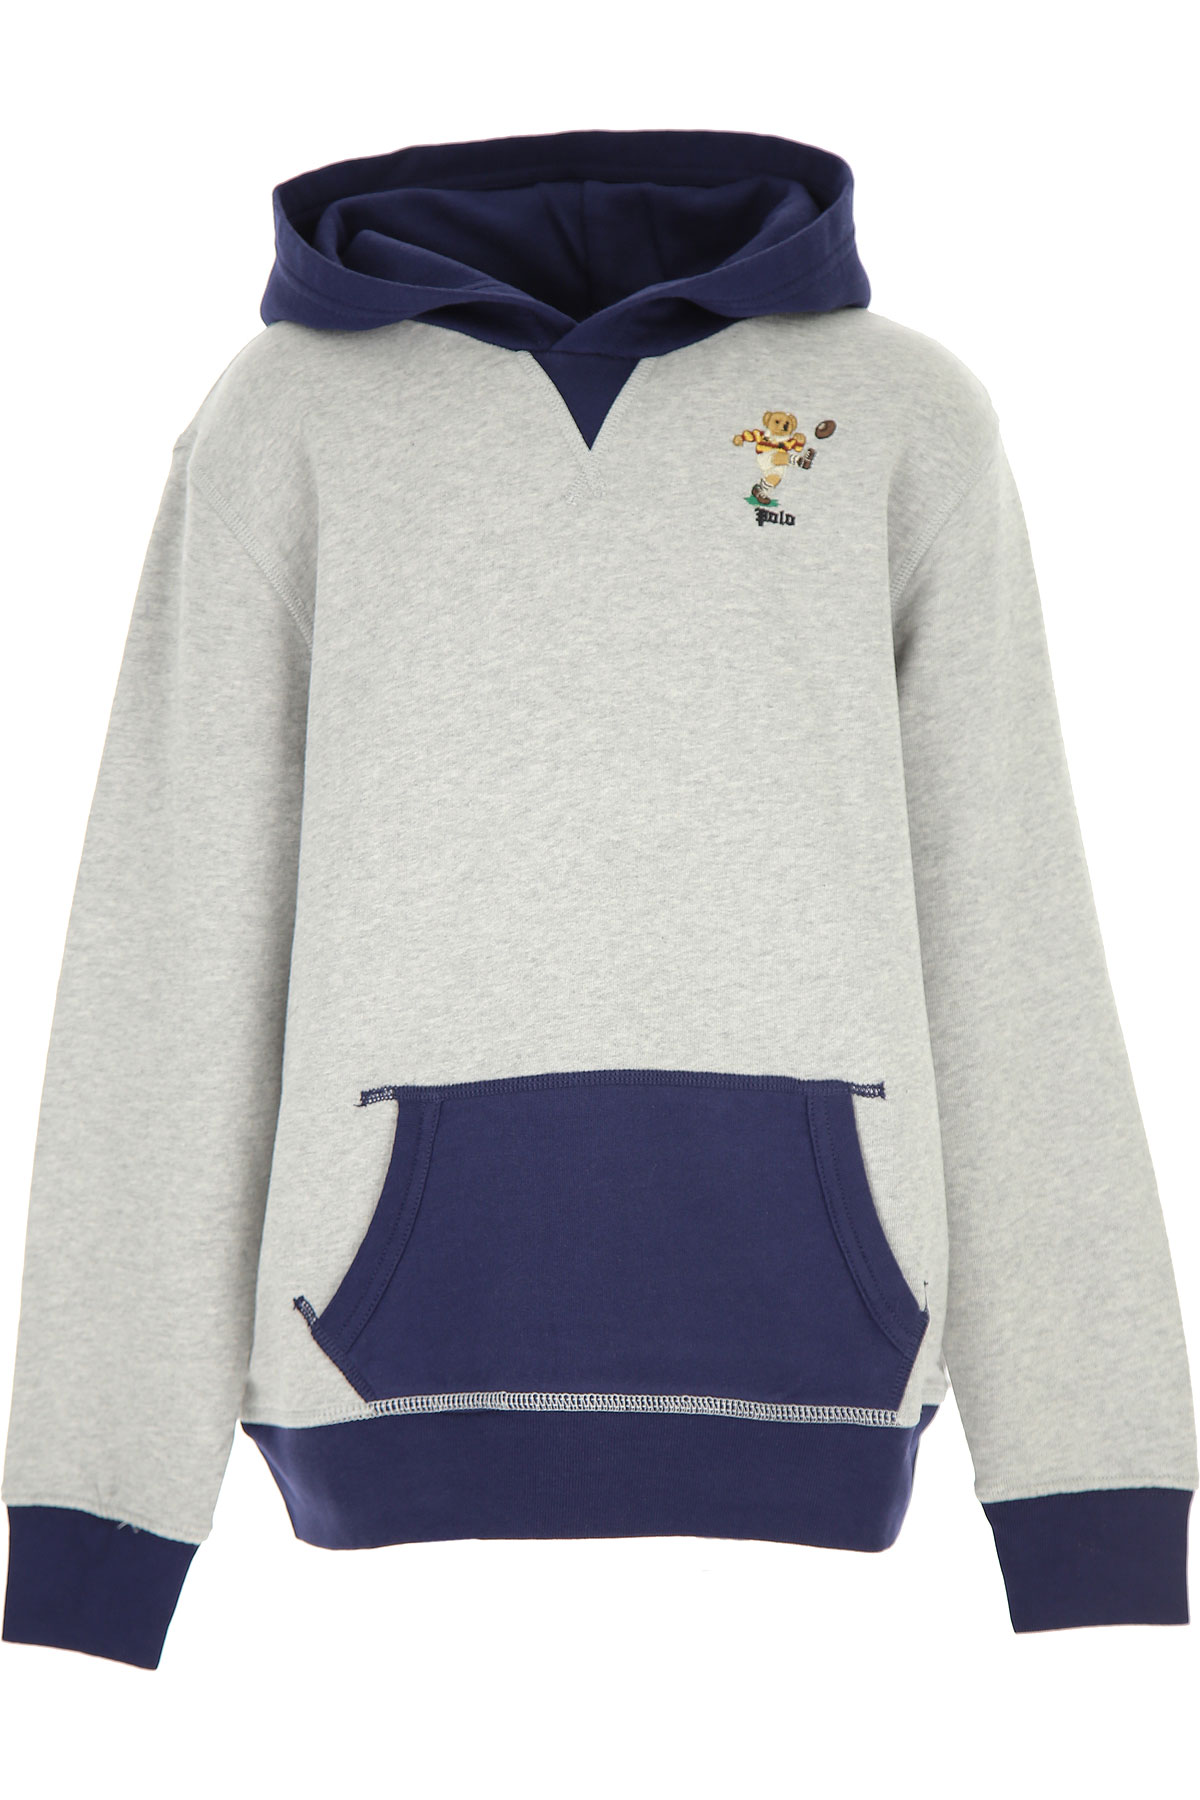 Ralph Lauren Kinder Sweatshirt & Kapuzenpullover für Jungen Günstig im Sale, Grau, Baumwolle, 2017, 2Y L M S XL